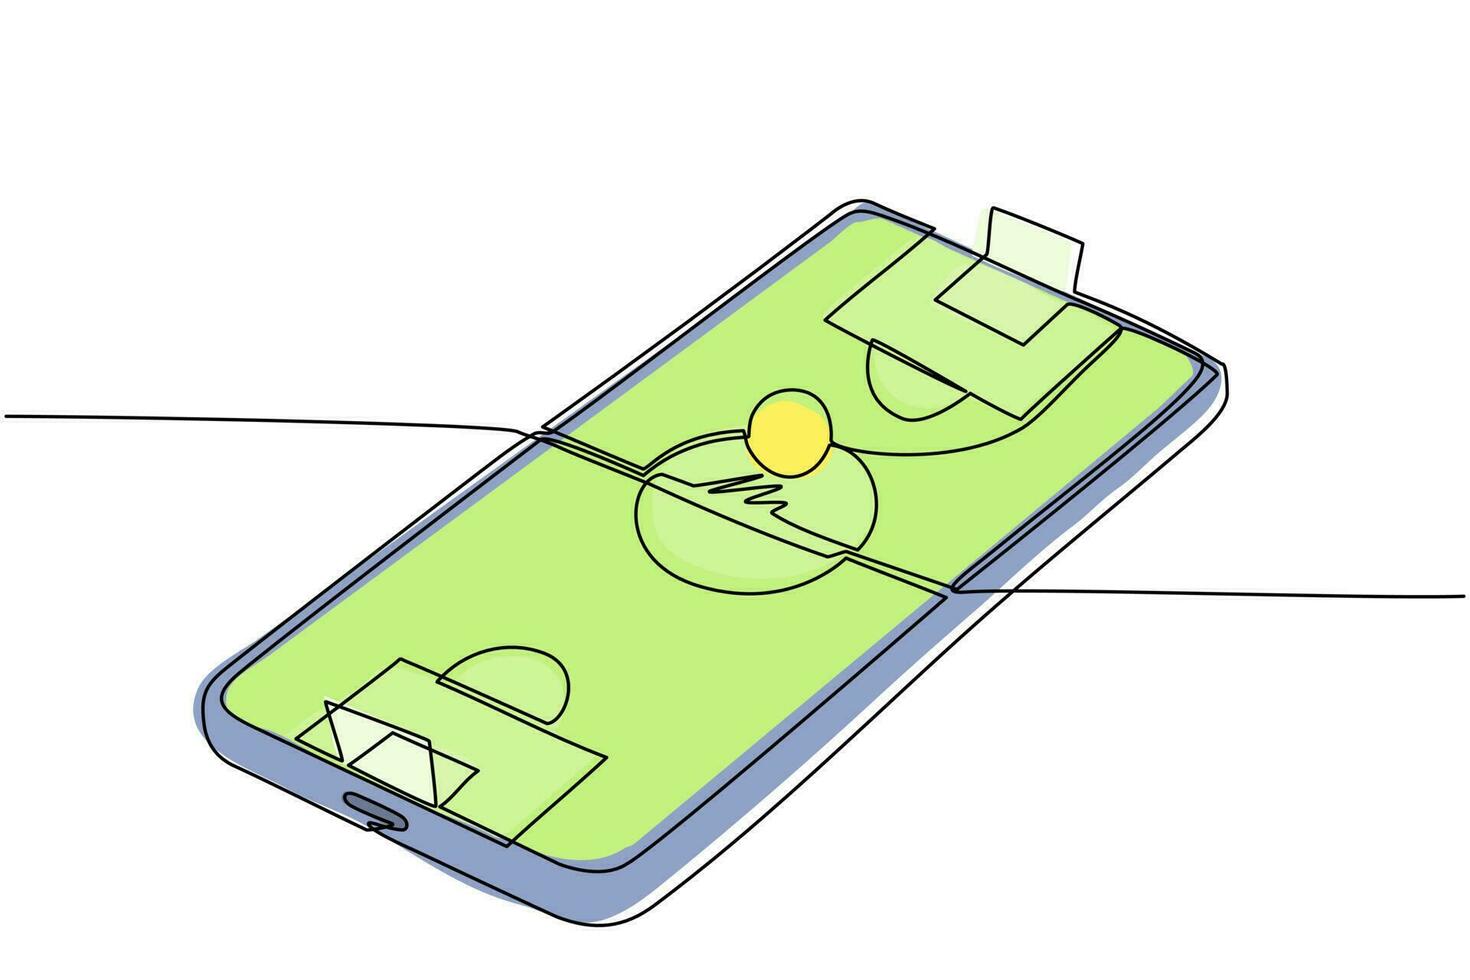 único campo de futebol de desenho de linha contínua na tela do smartphone.  futebol de futebol